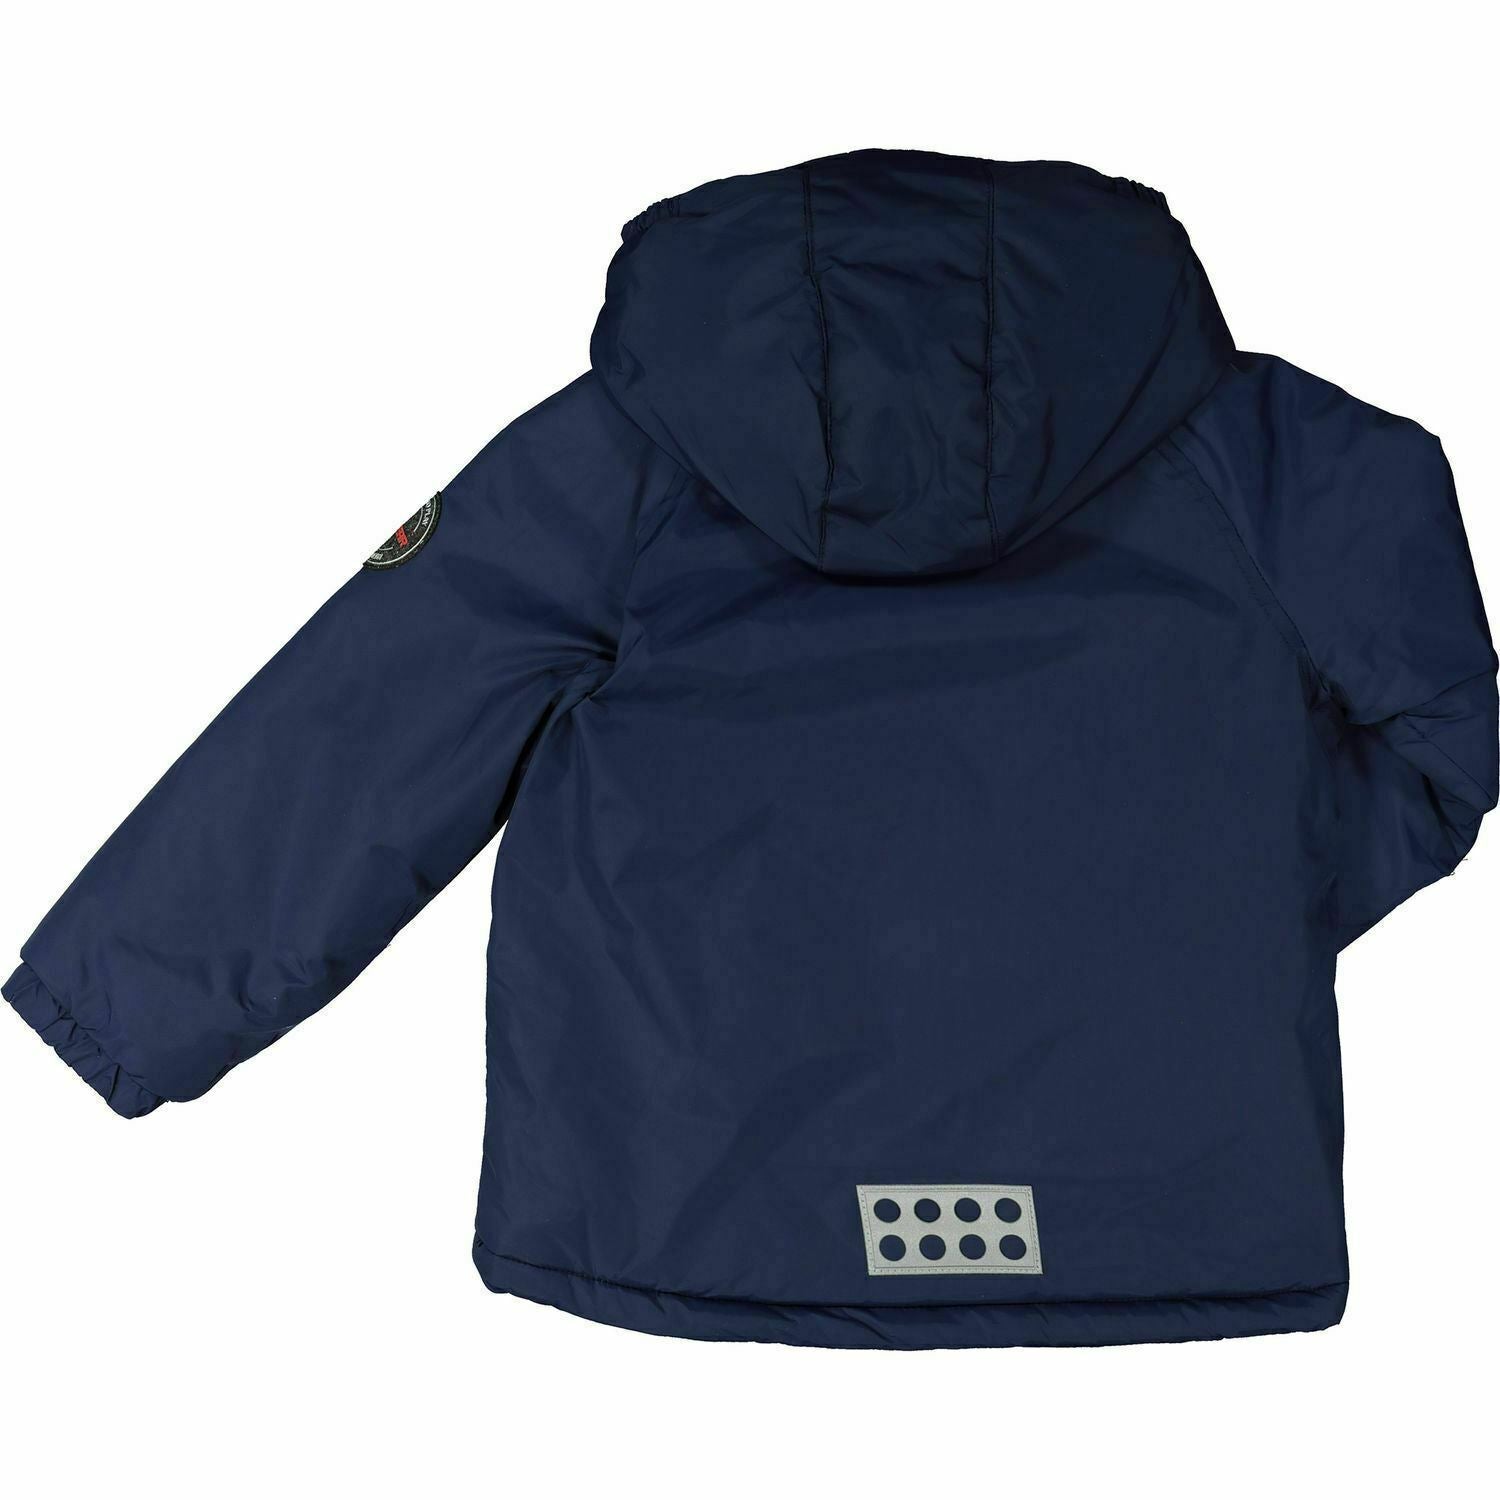 LEGO WEAR Baby Boys' Kids JOHAN 793 Winter Jacket, Navy Blue, size 12 months